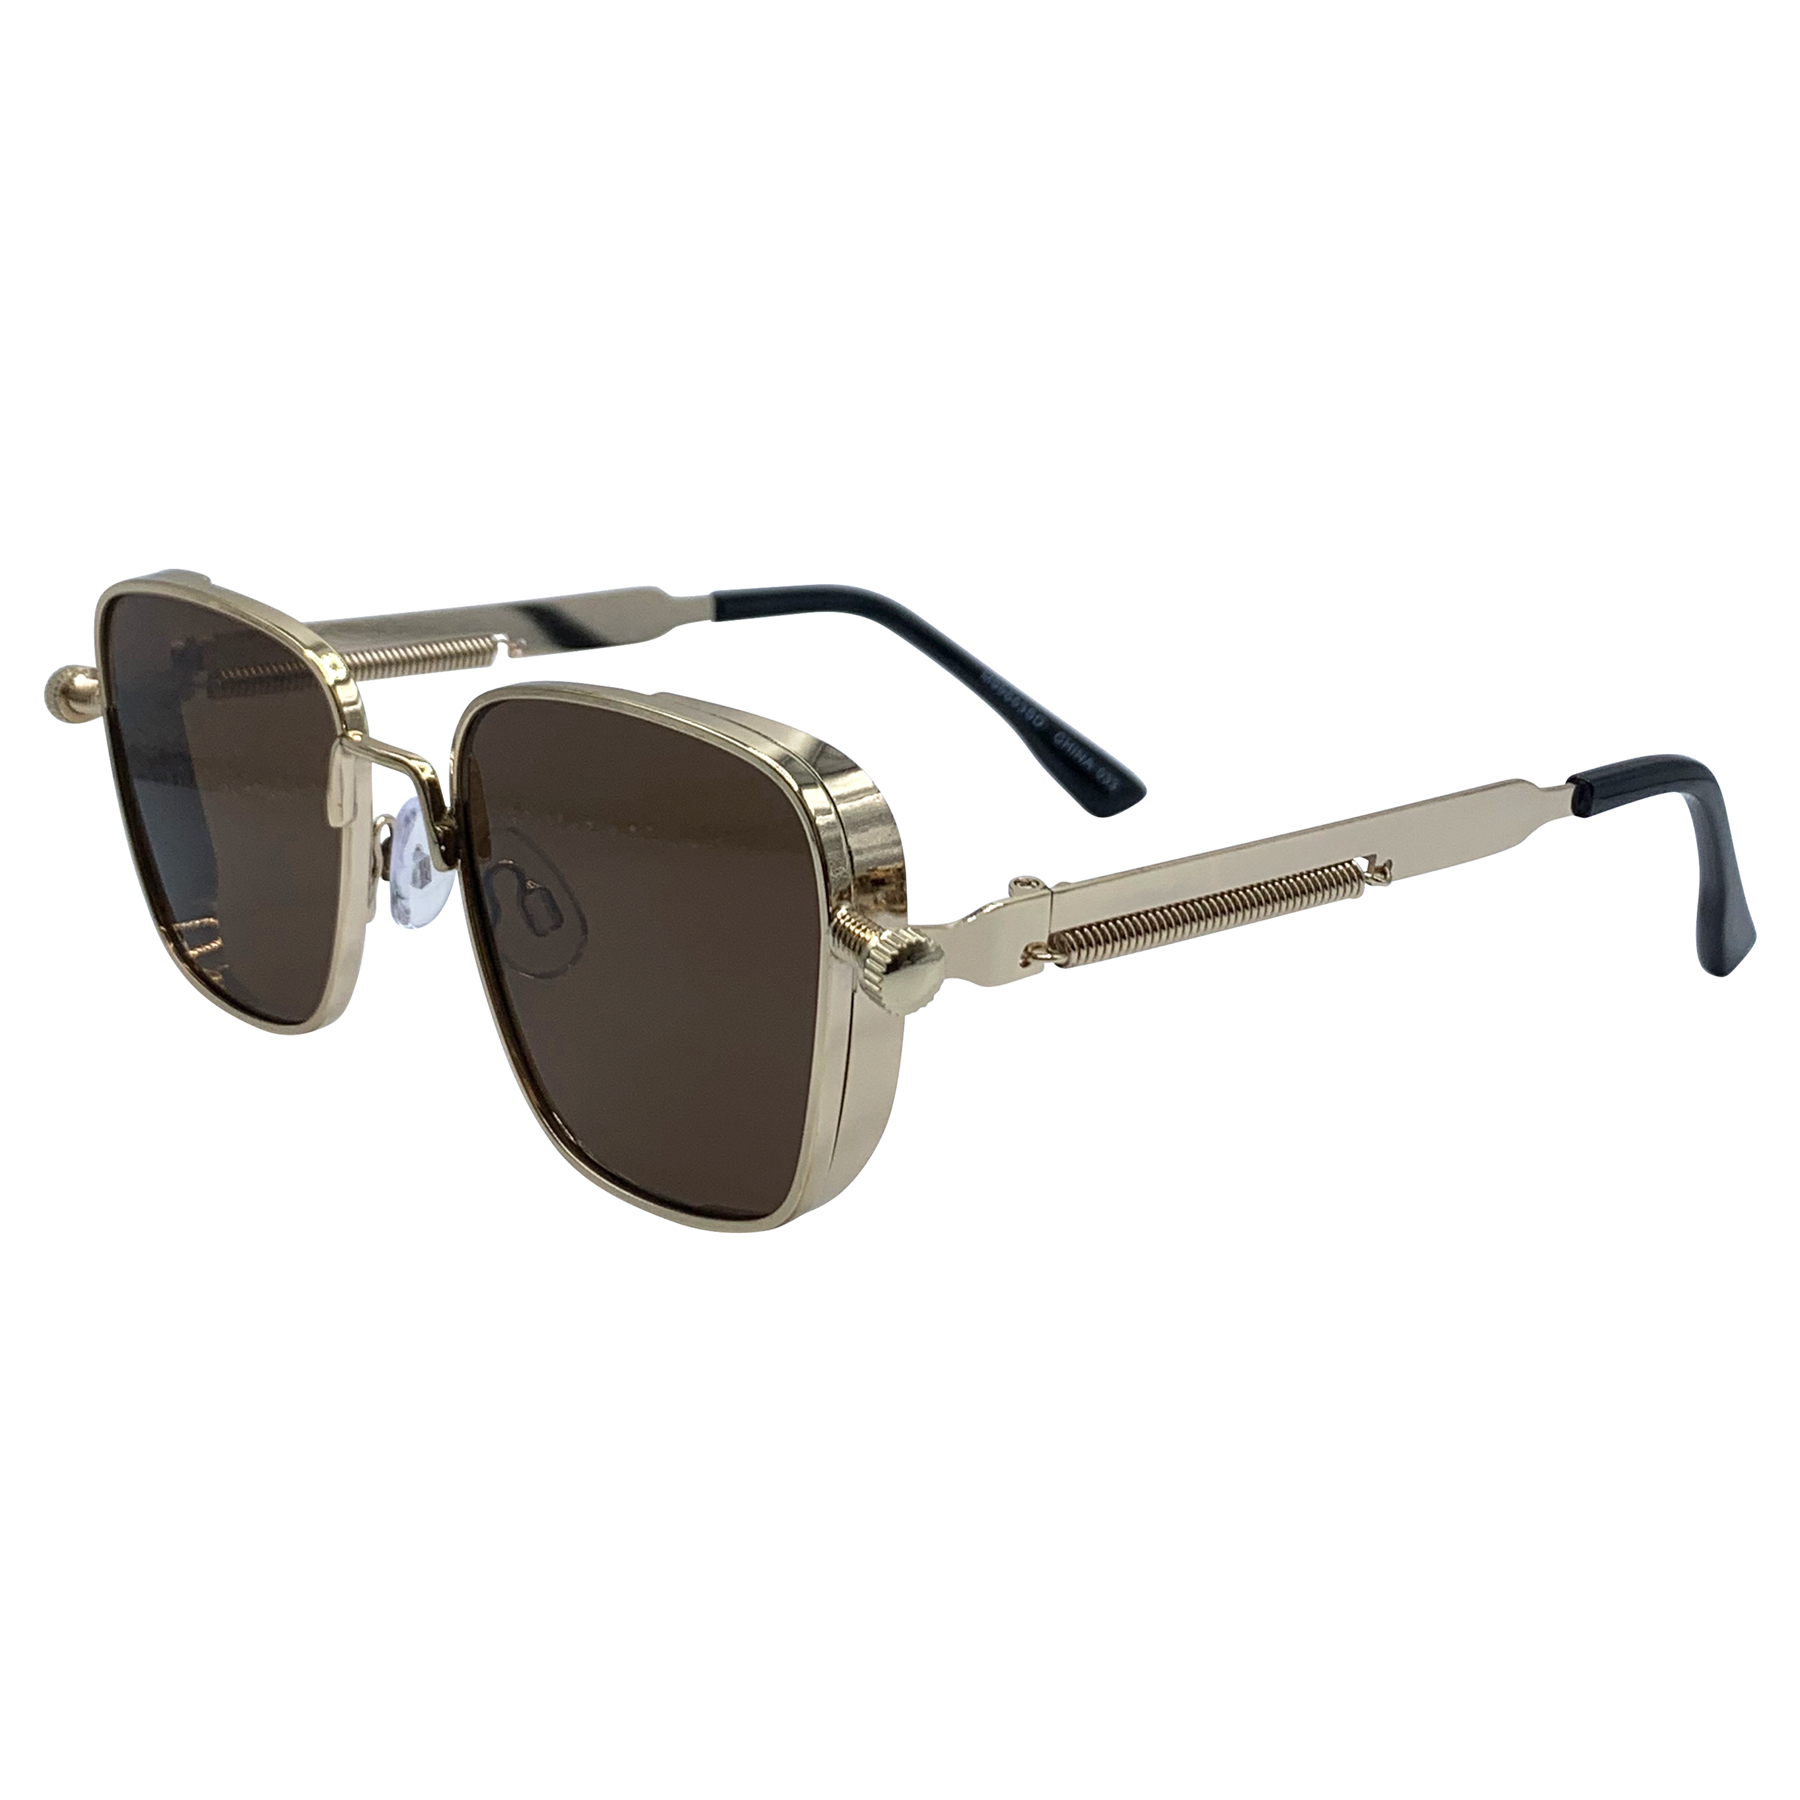 MINER Industrial Square Sunglasses Goggle